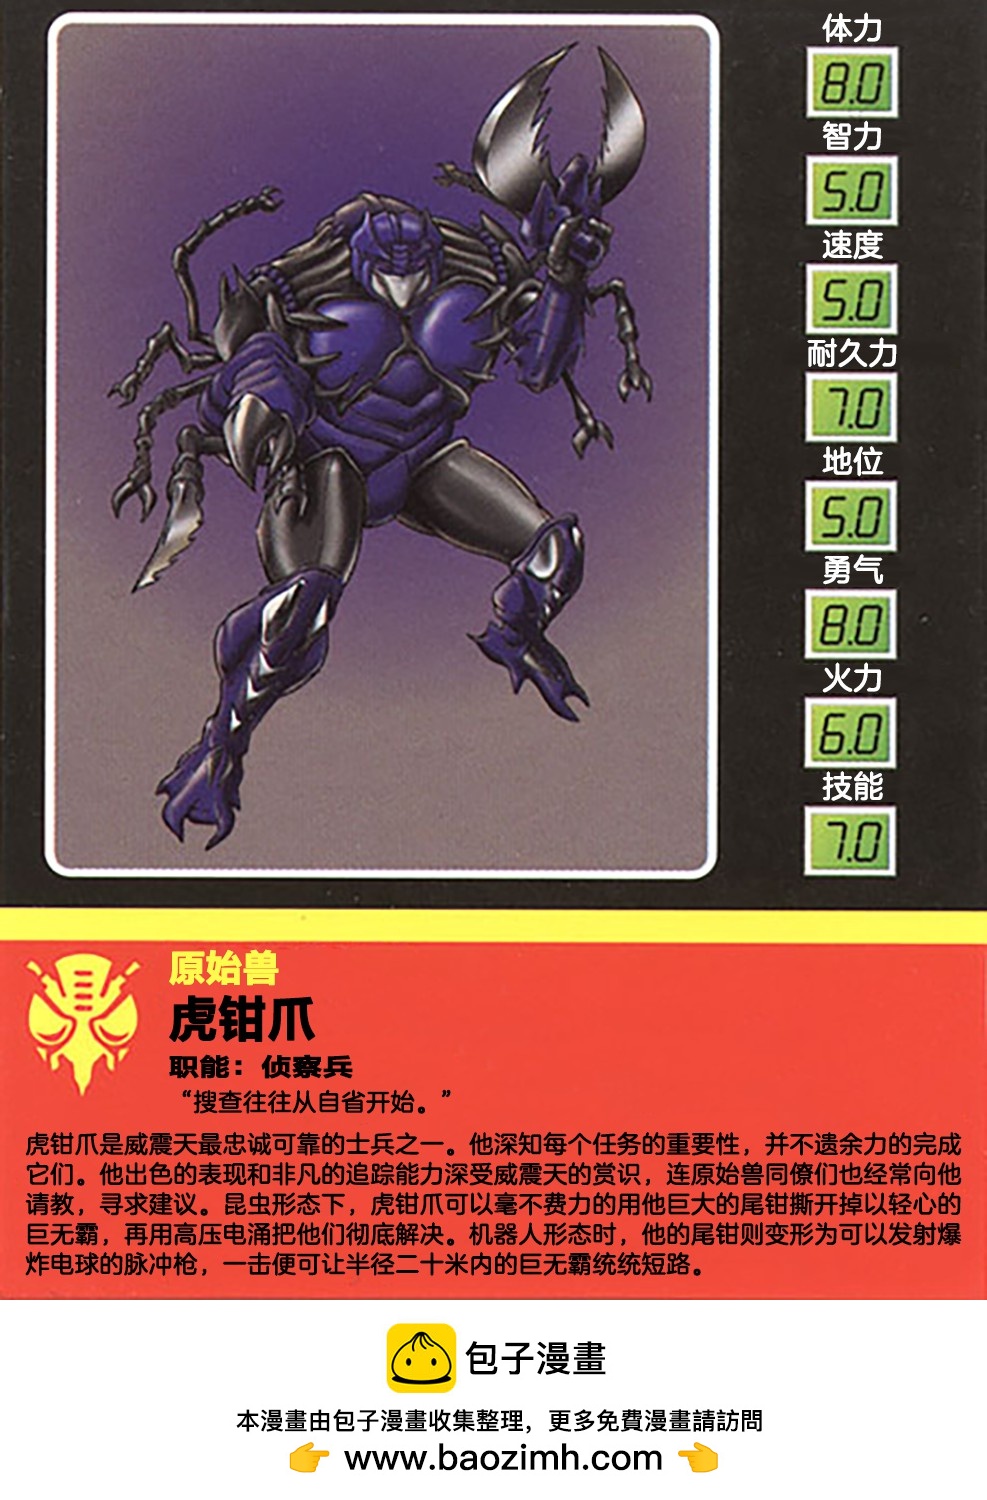 變形金剛：BotCon 1994 - 1998 人物卡 - 1